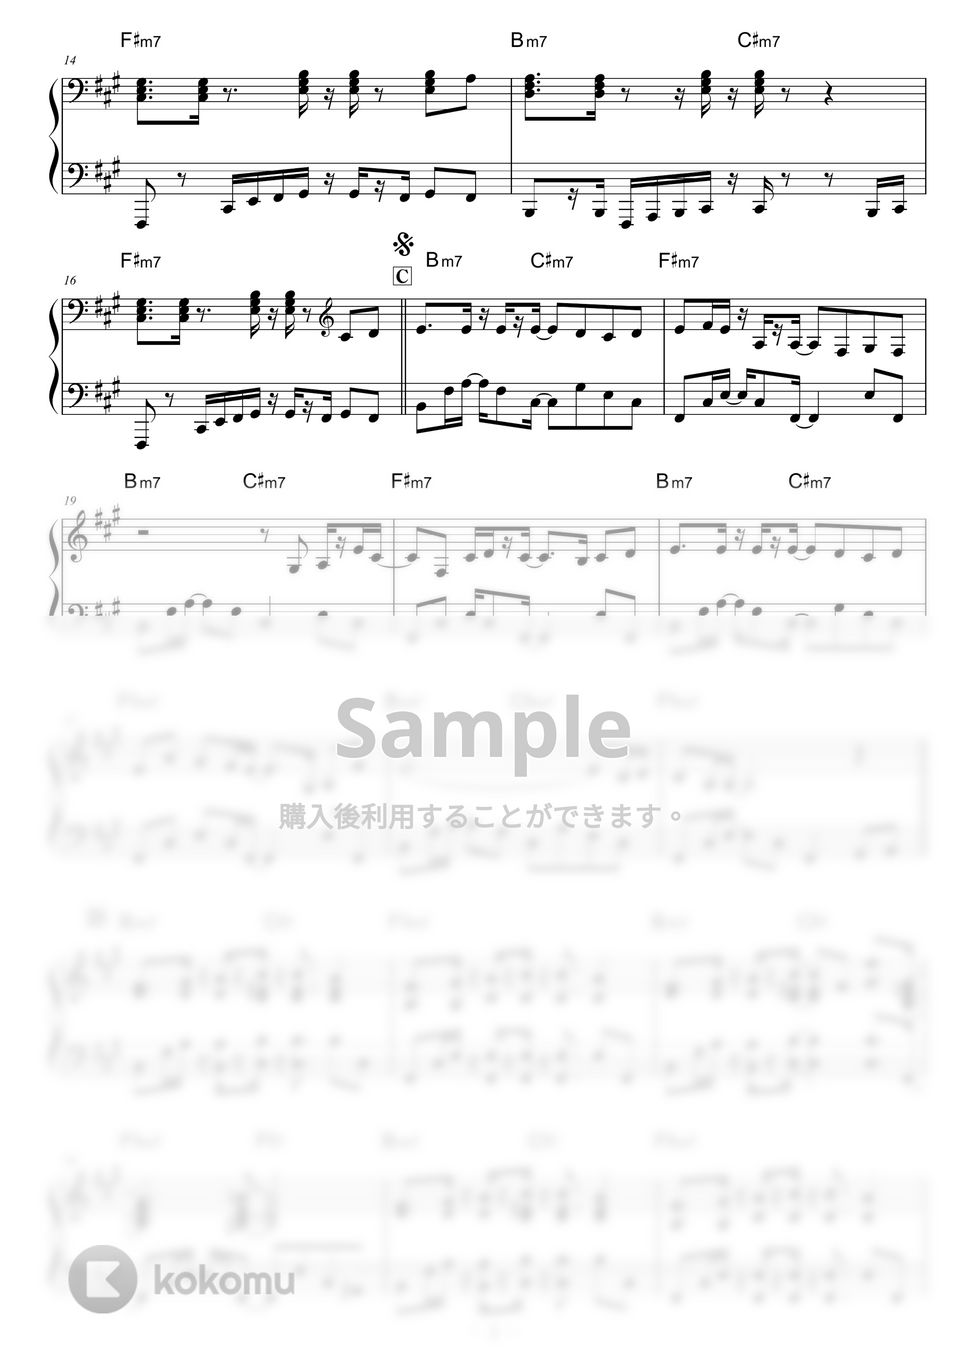 bohemianvoodoo - El Ron Zacapa by piano*score